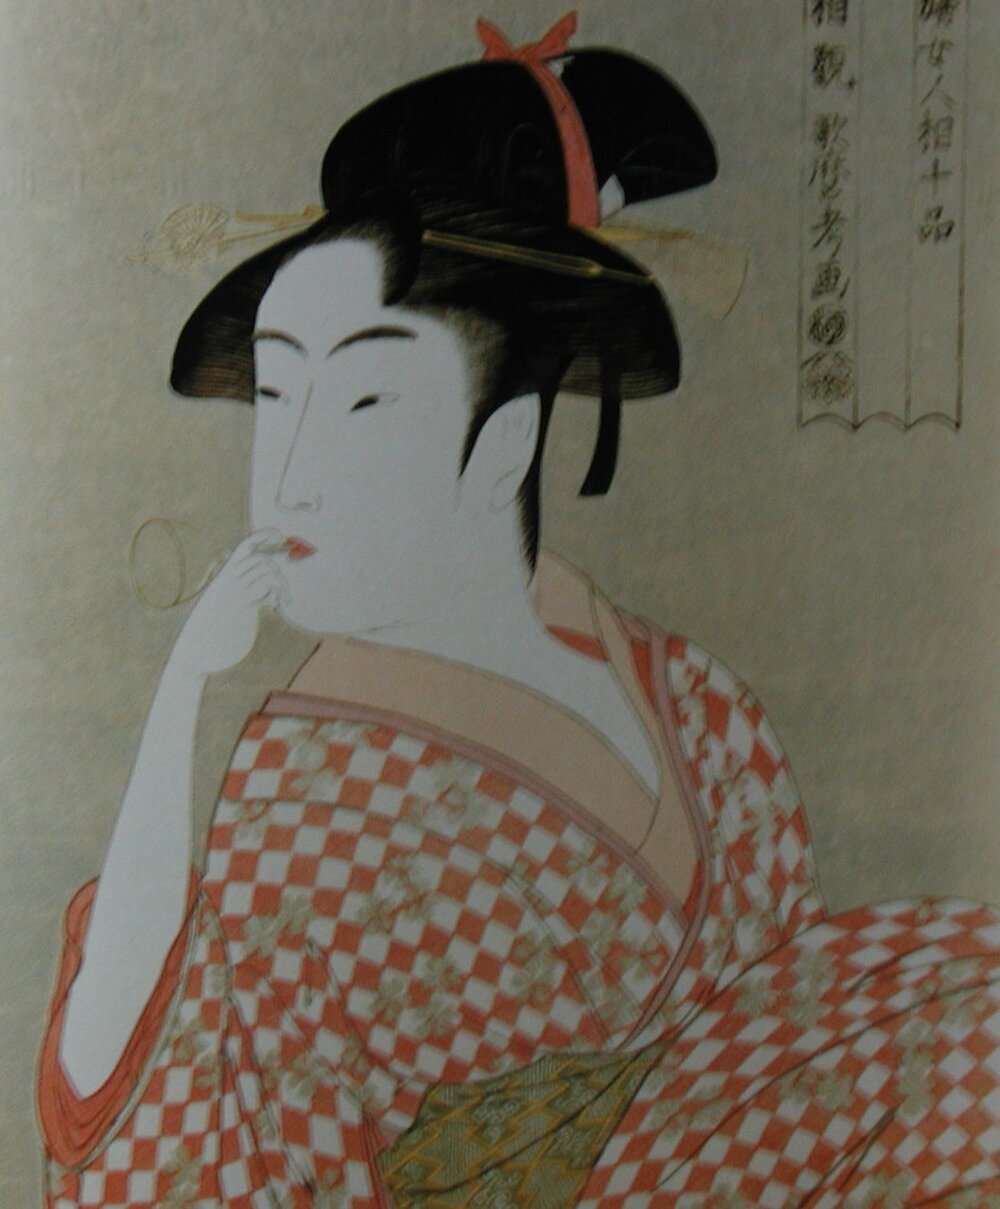 Ukiyoe by Utamaro